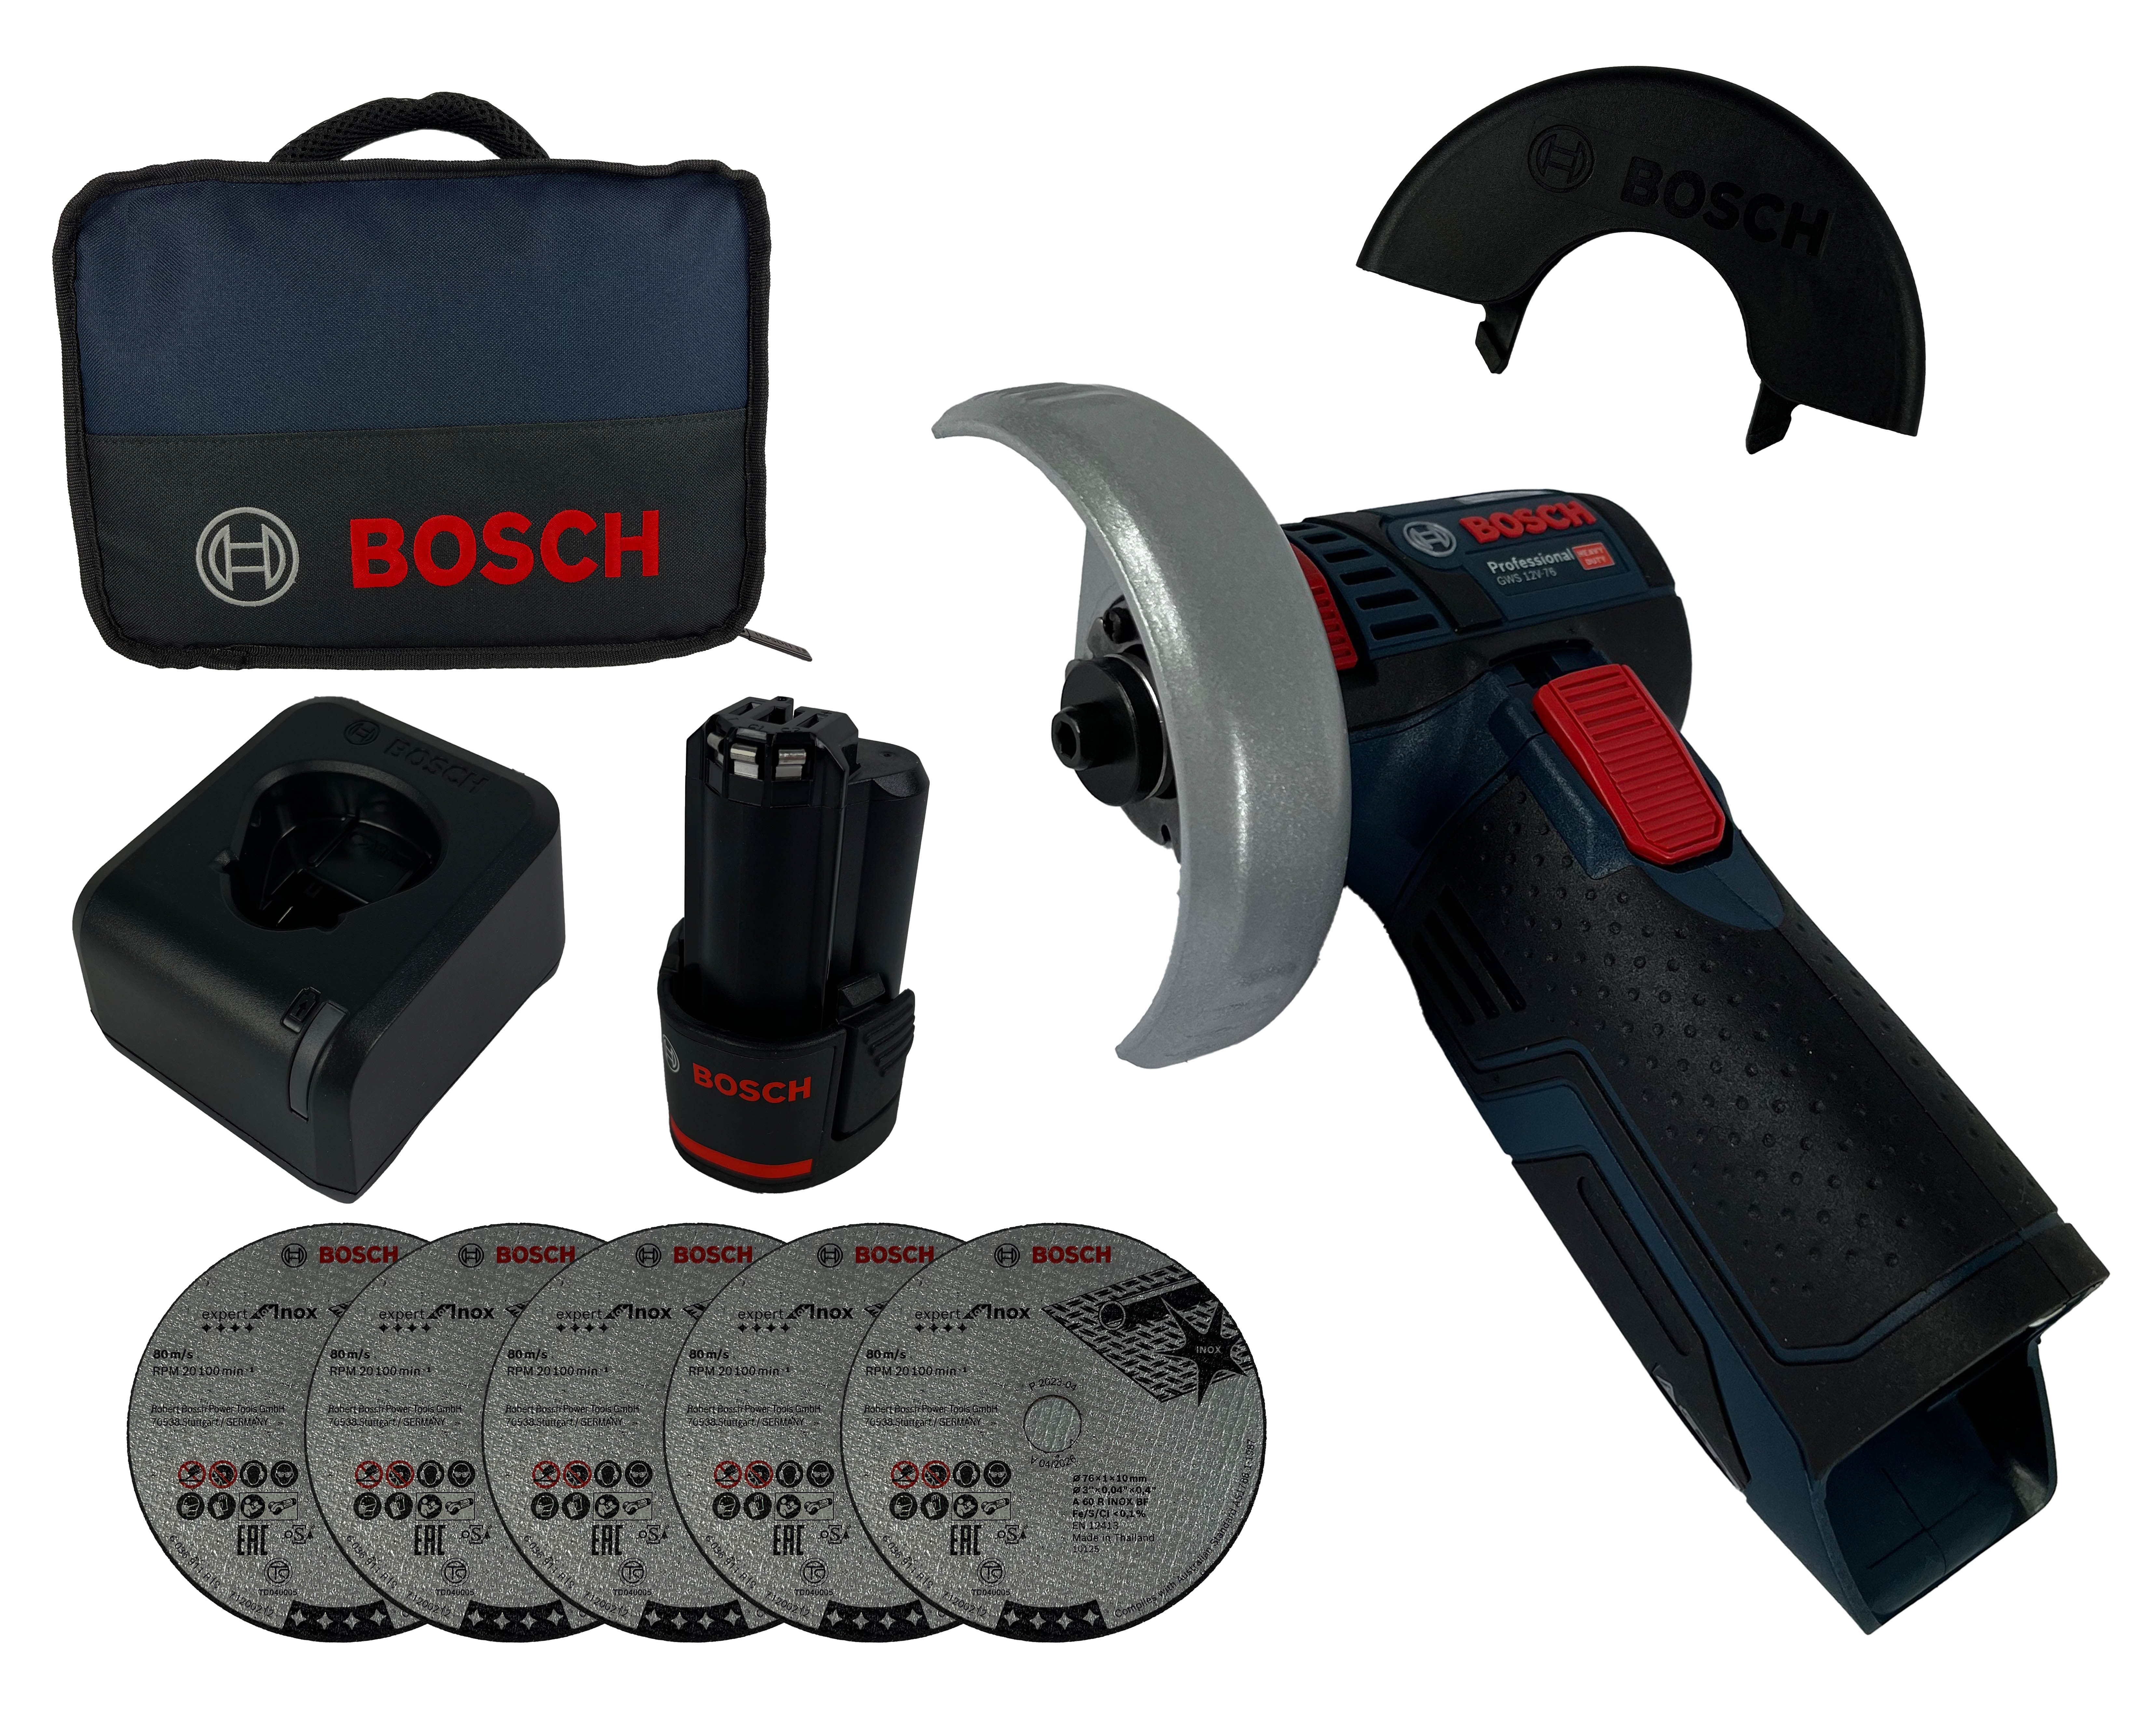 Bosch Professional Akku-Winkelschleifer GWS 12V-76, mit Akku 2 Ah und Ladegerät in Tasche inkl. 5tlg. Trennscheiben-Set